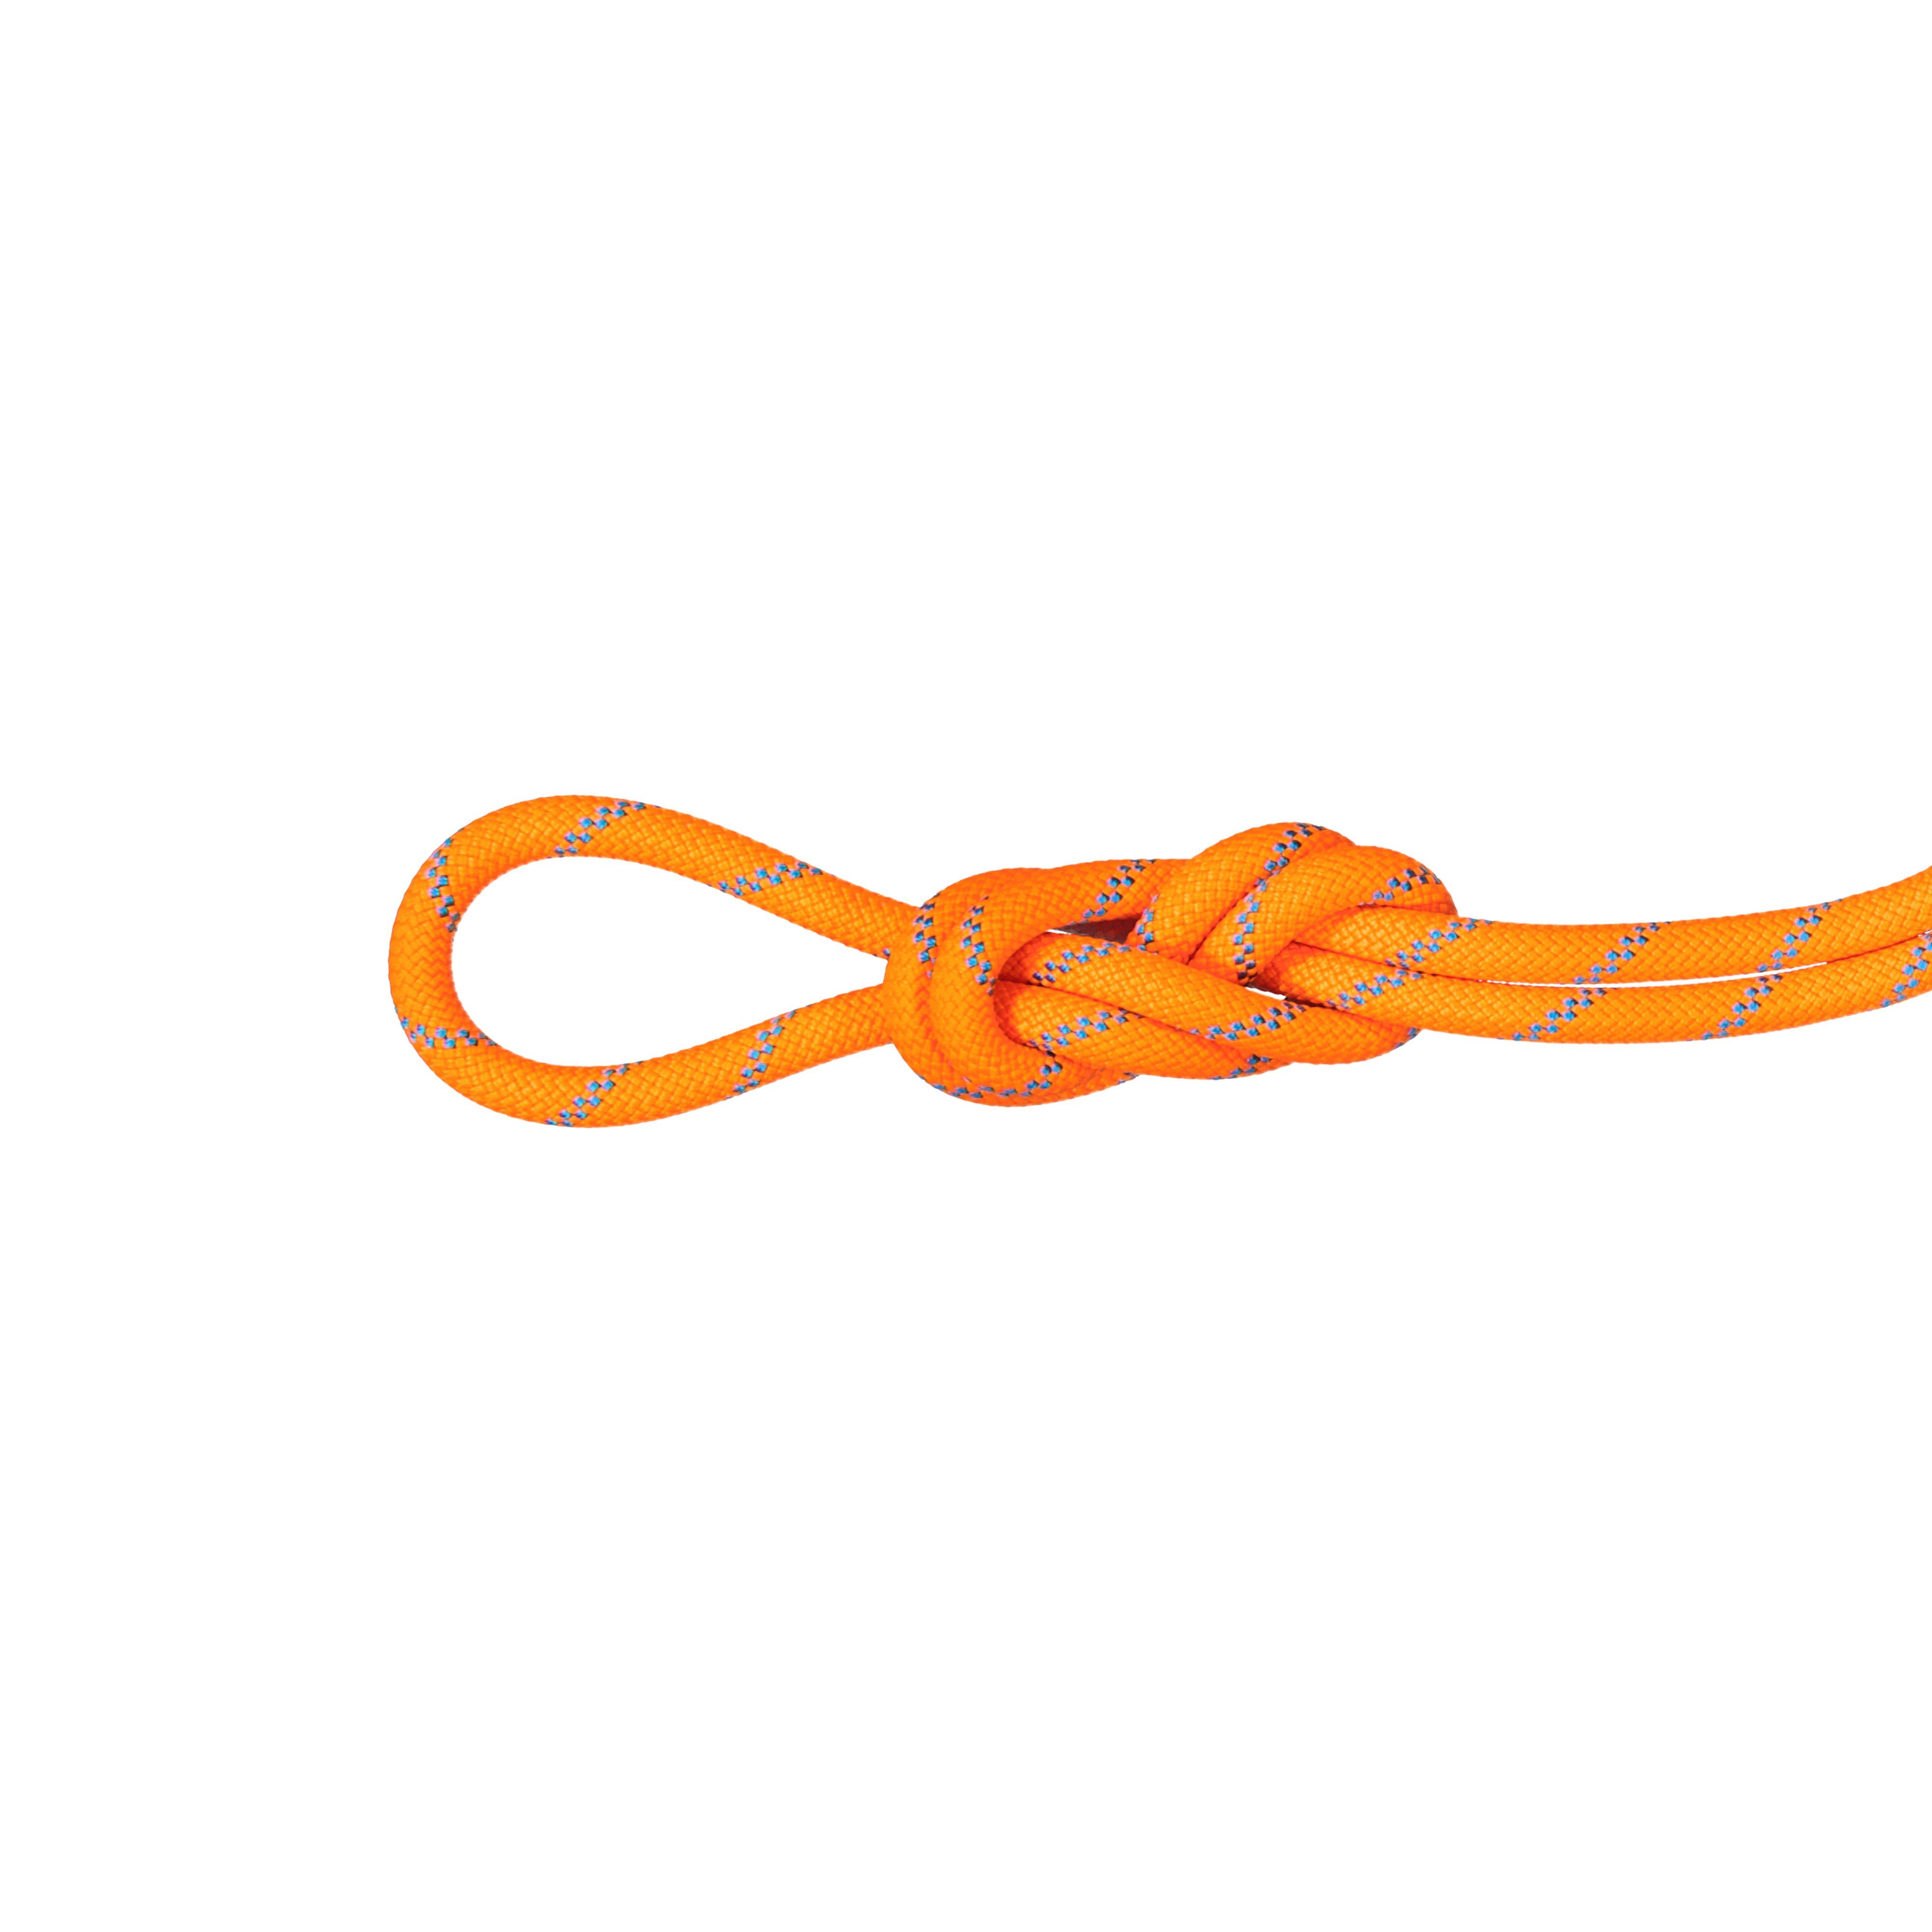 8.7 Alpine Sender Dry Rope - Dry Standard, vibrant orange-ocean, 50 m thumbnail